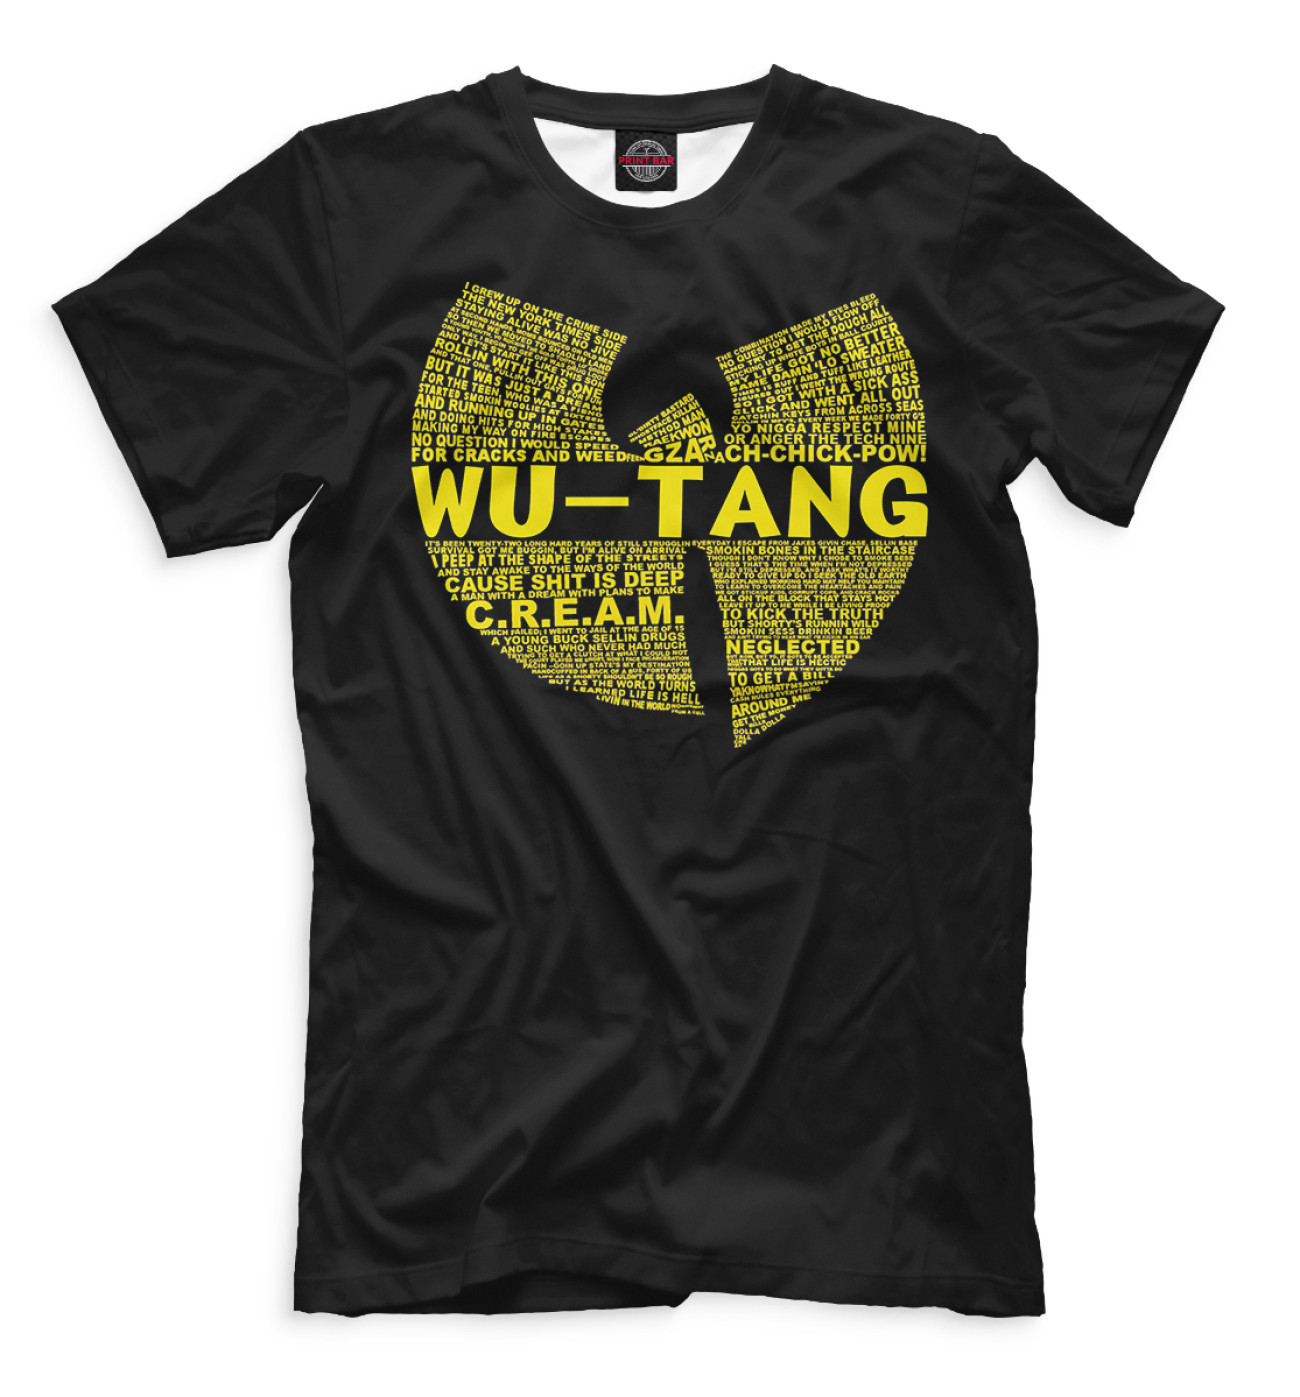 Мужская Футболка Wu-Tang Clan, артикул: WTK-439012-fut-2